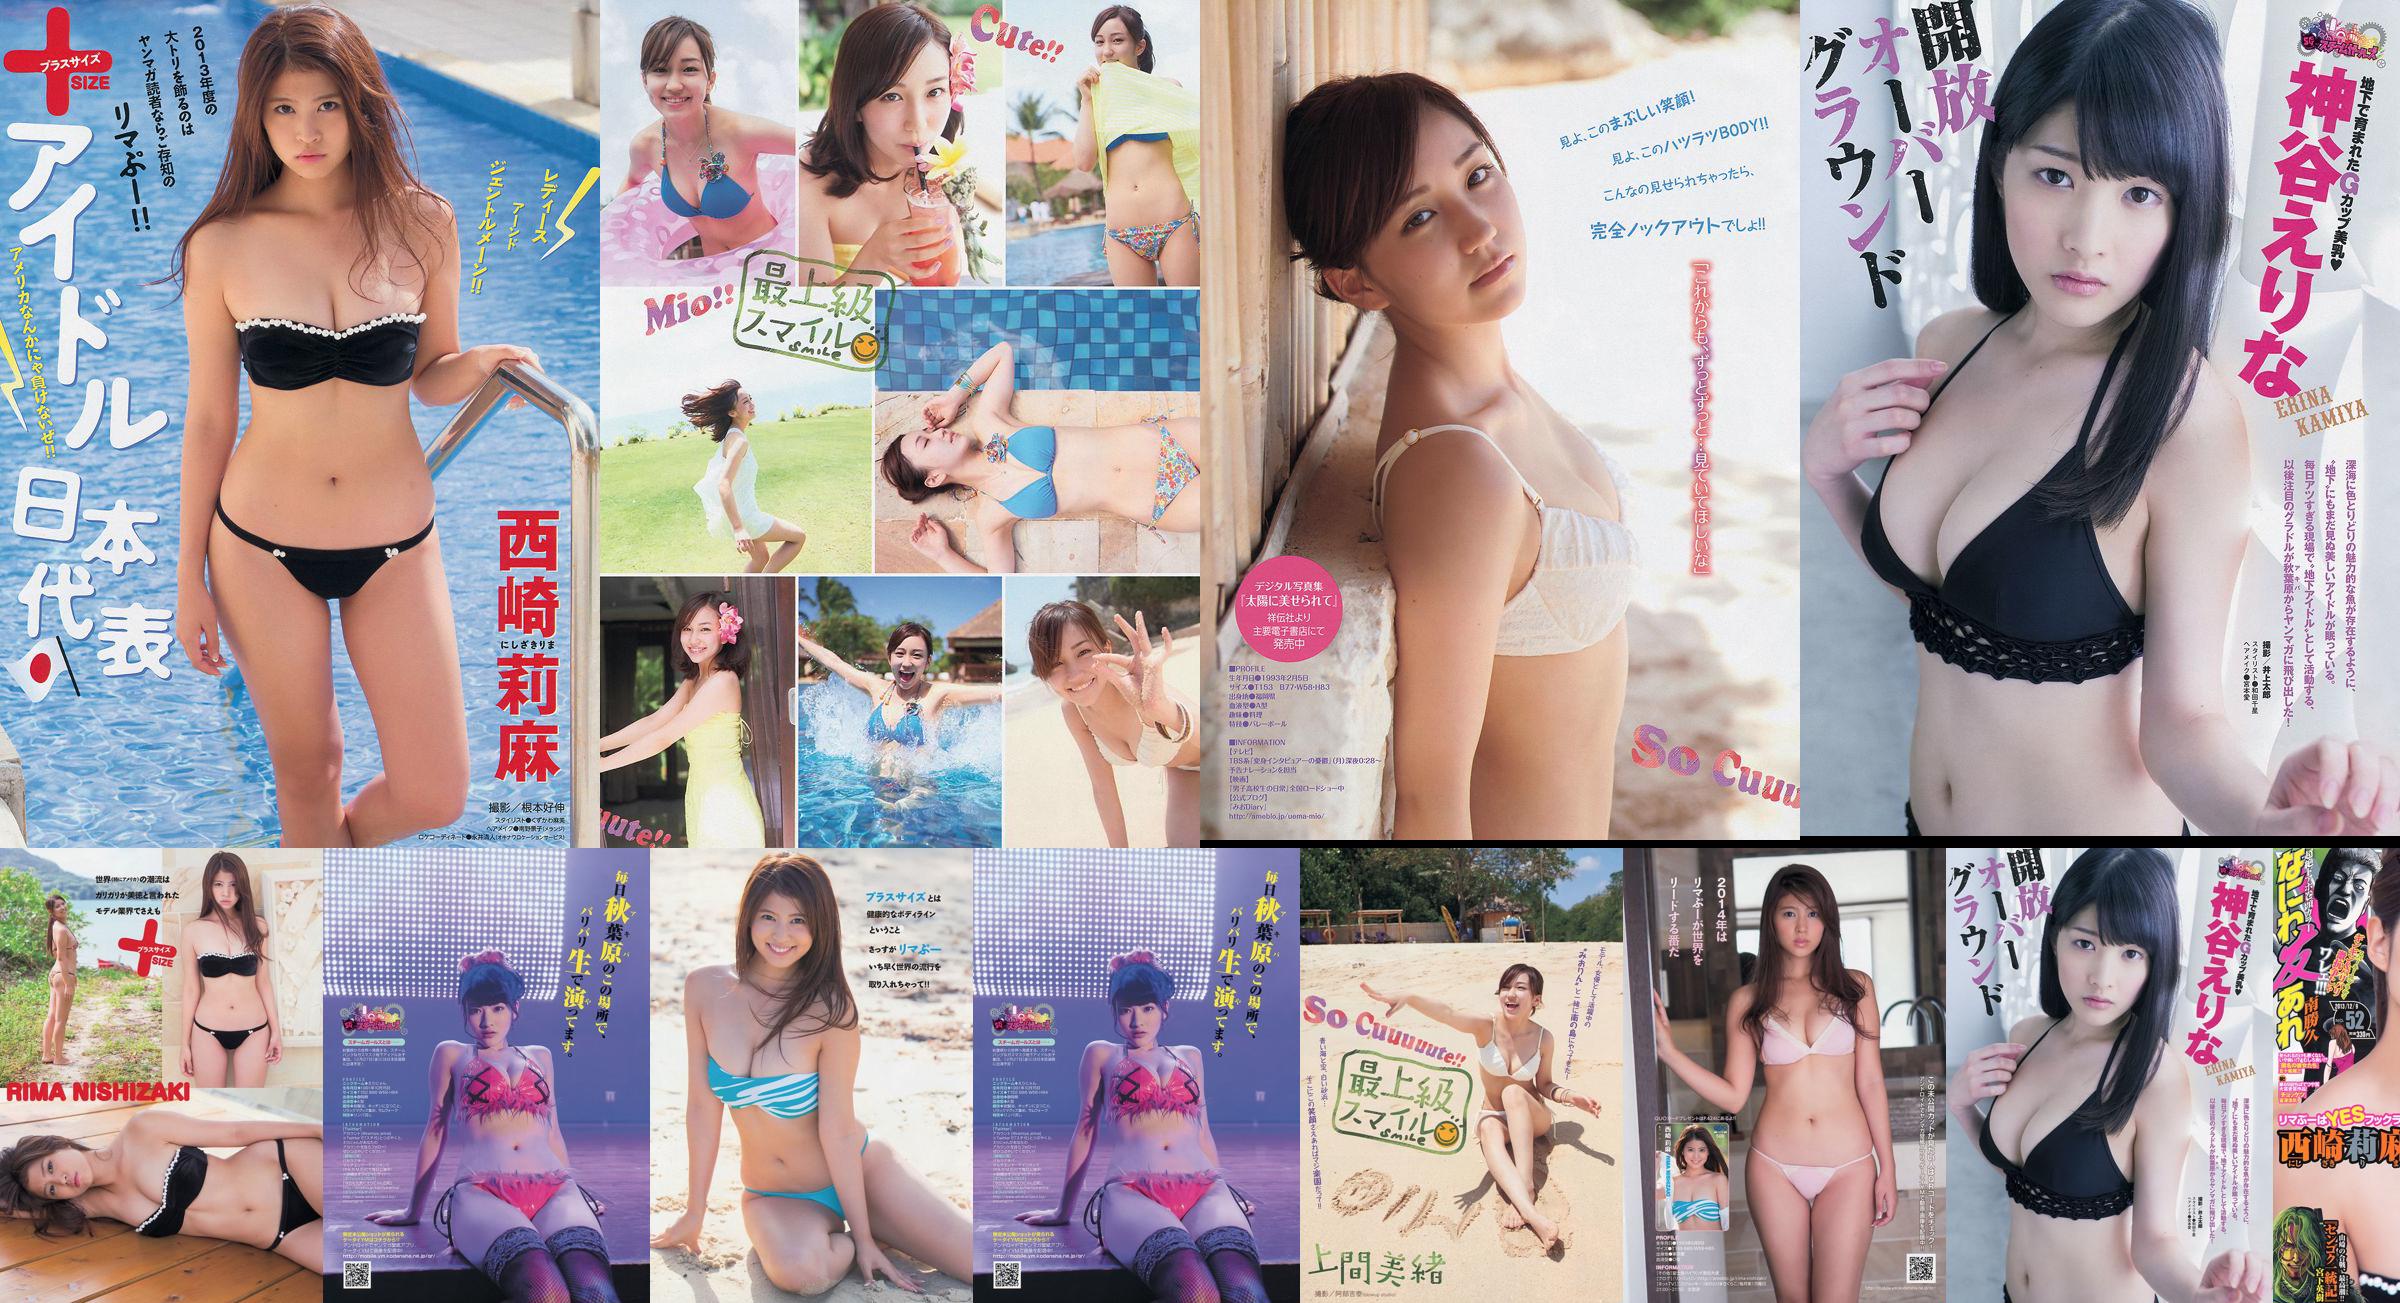 [Revista joven] Rima Nishizaki Mio Uema Erina Kamiya 2013 No.52 Photo Moshi No.42a608 Página 1